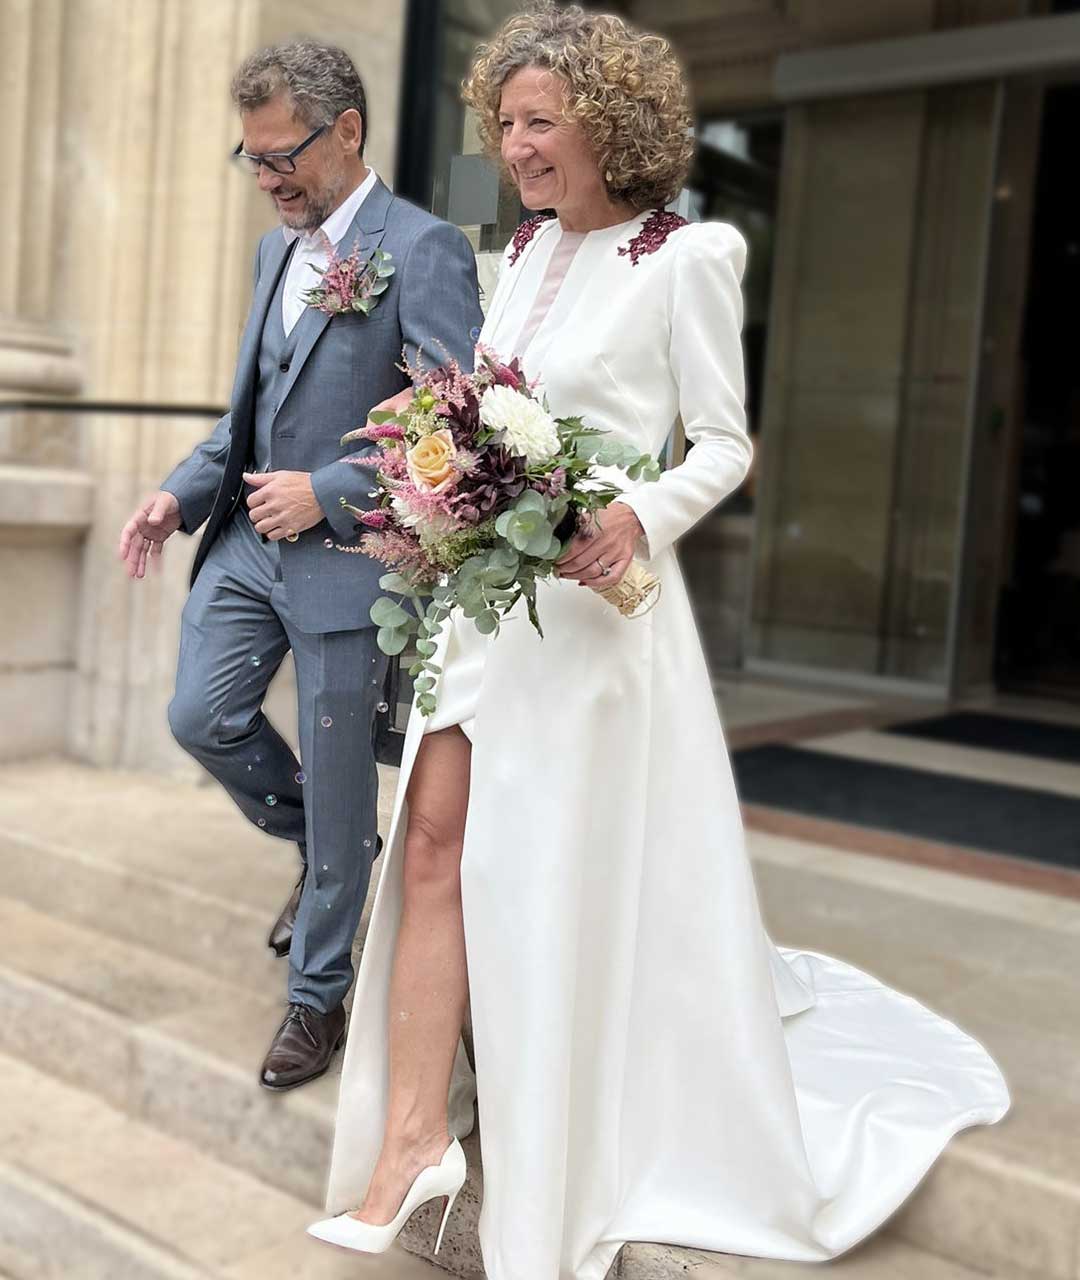 Le mariage après 40-50 ans par Alina Marti Paris